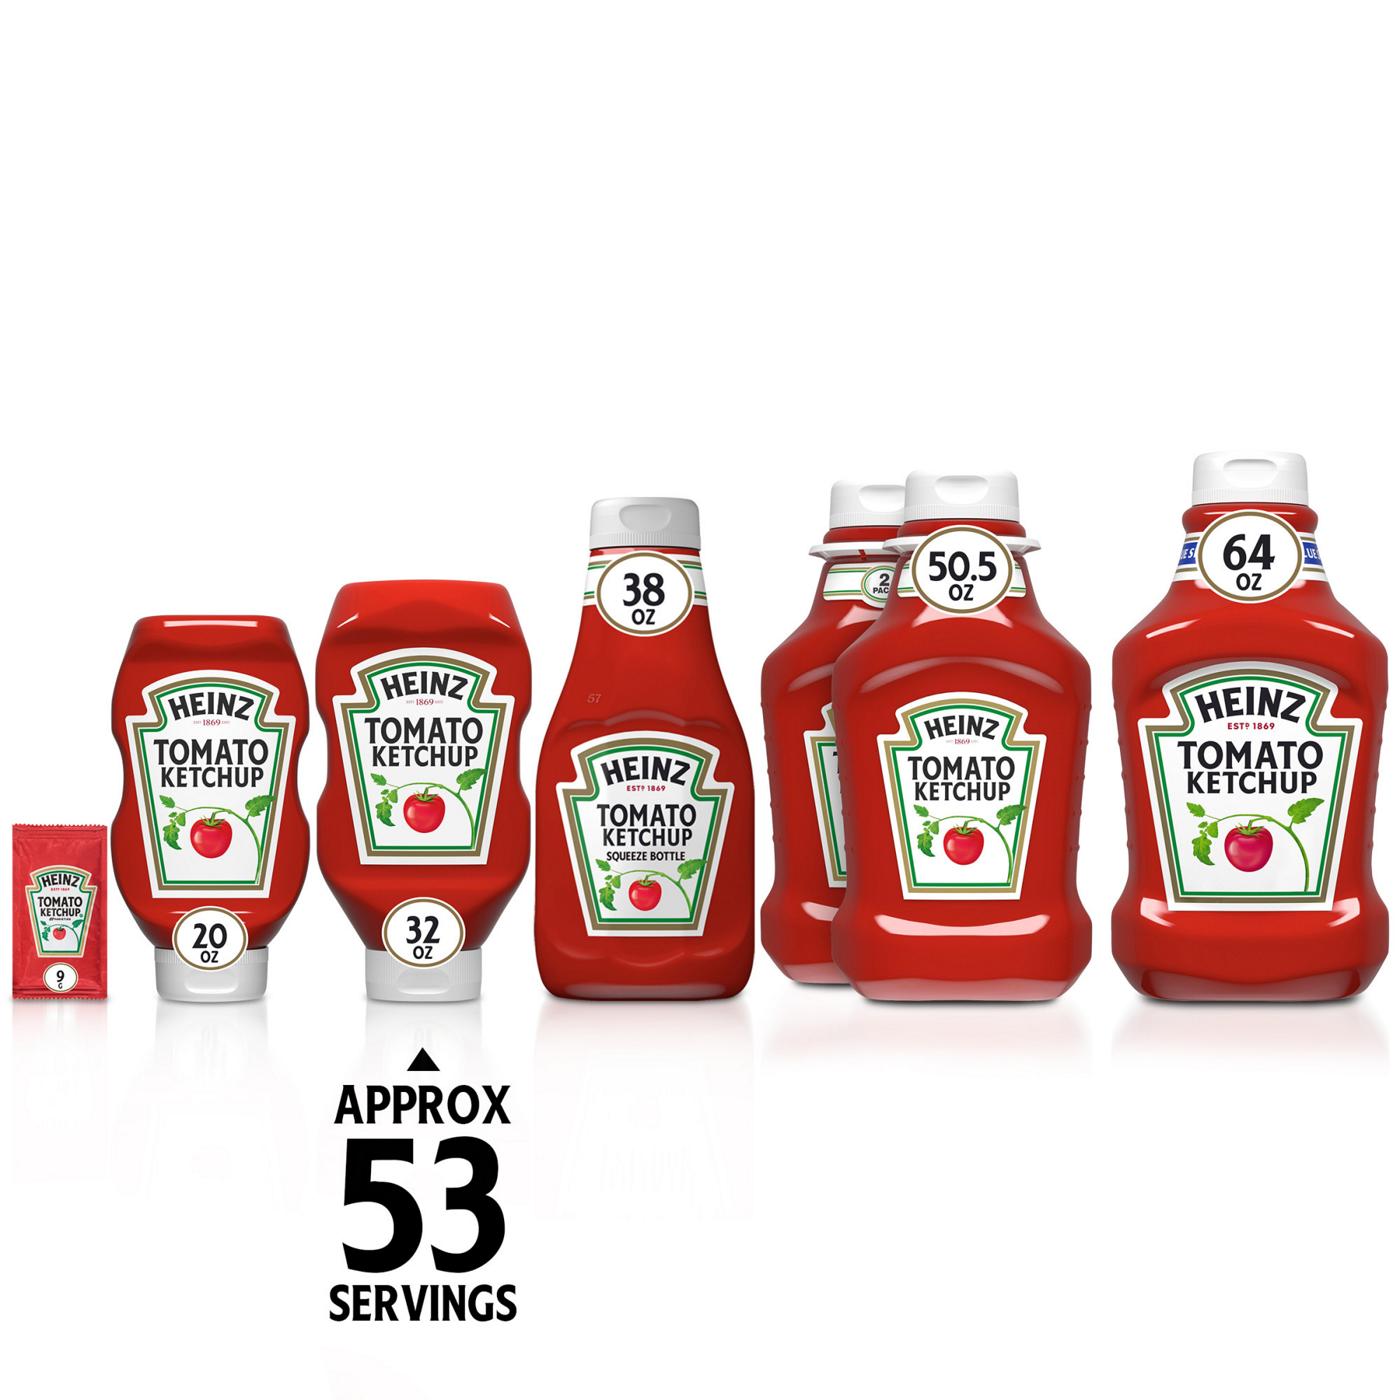 Heinz Tomato Ketchup; image 7 of 7